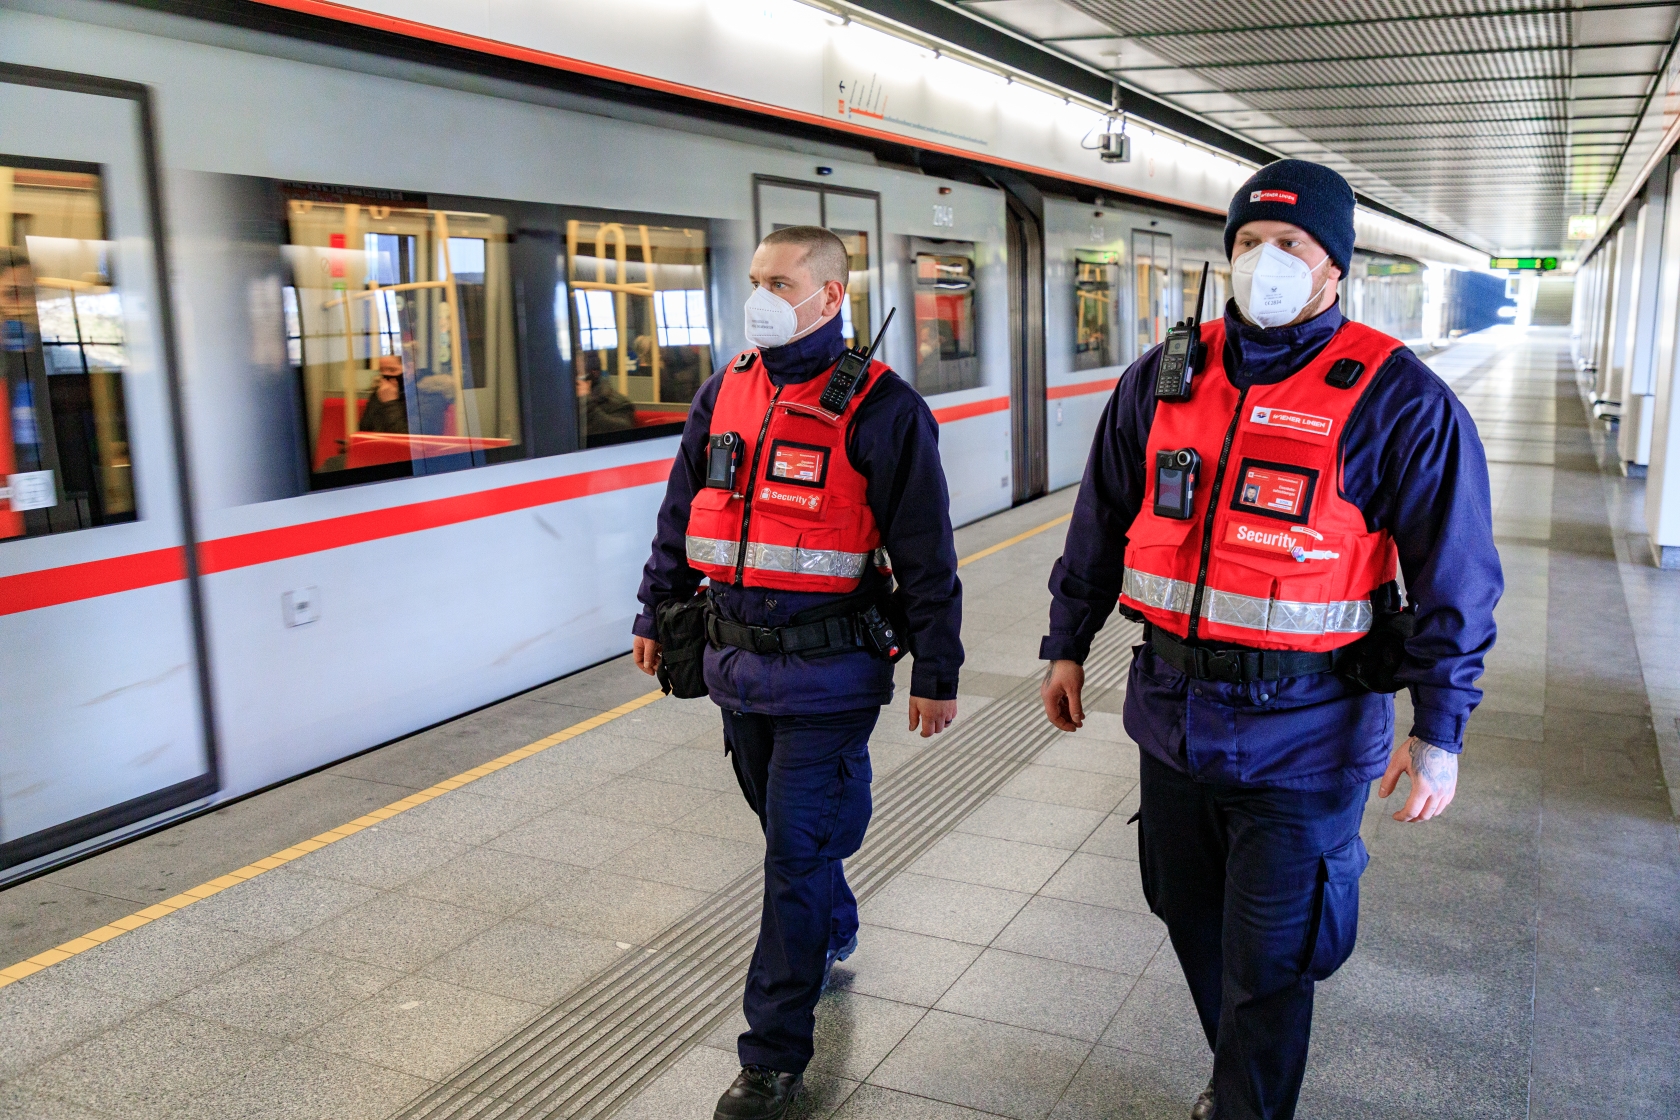 Das Security Team der Wiener Linien hilft gerne weiter und achtet auf die Einhaltung der Hausordnung